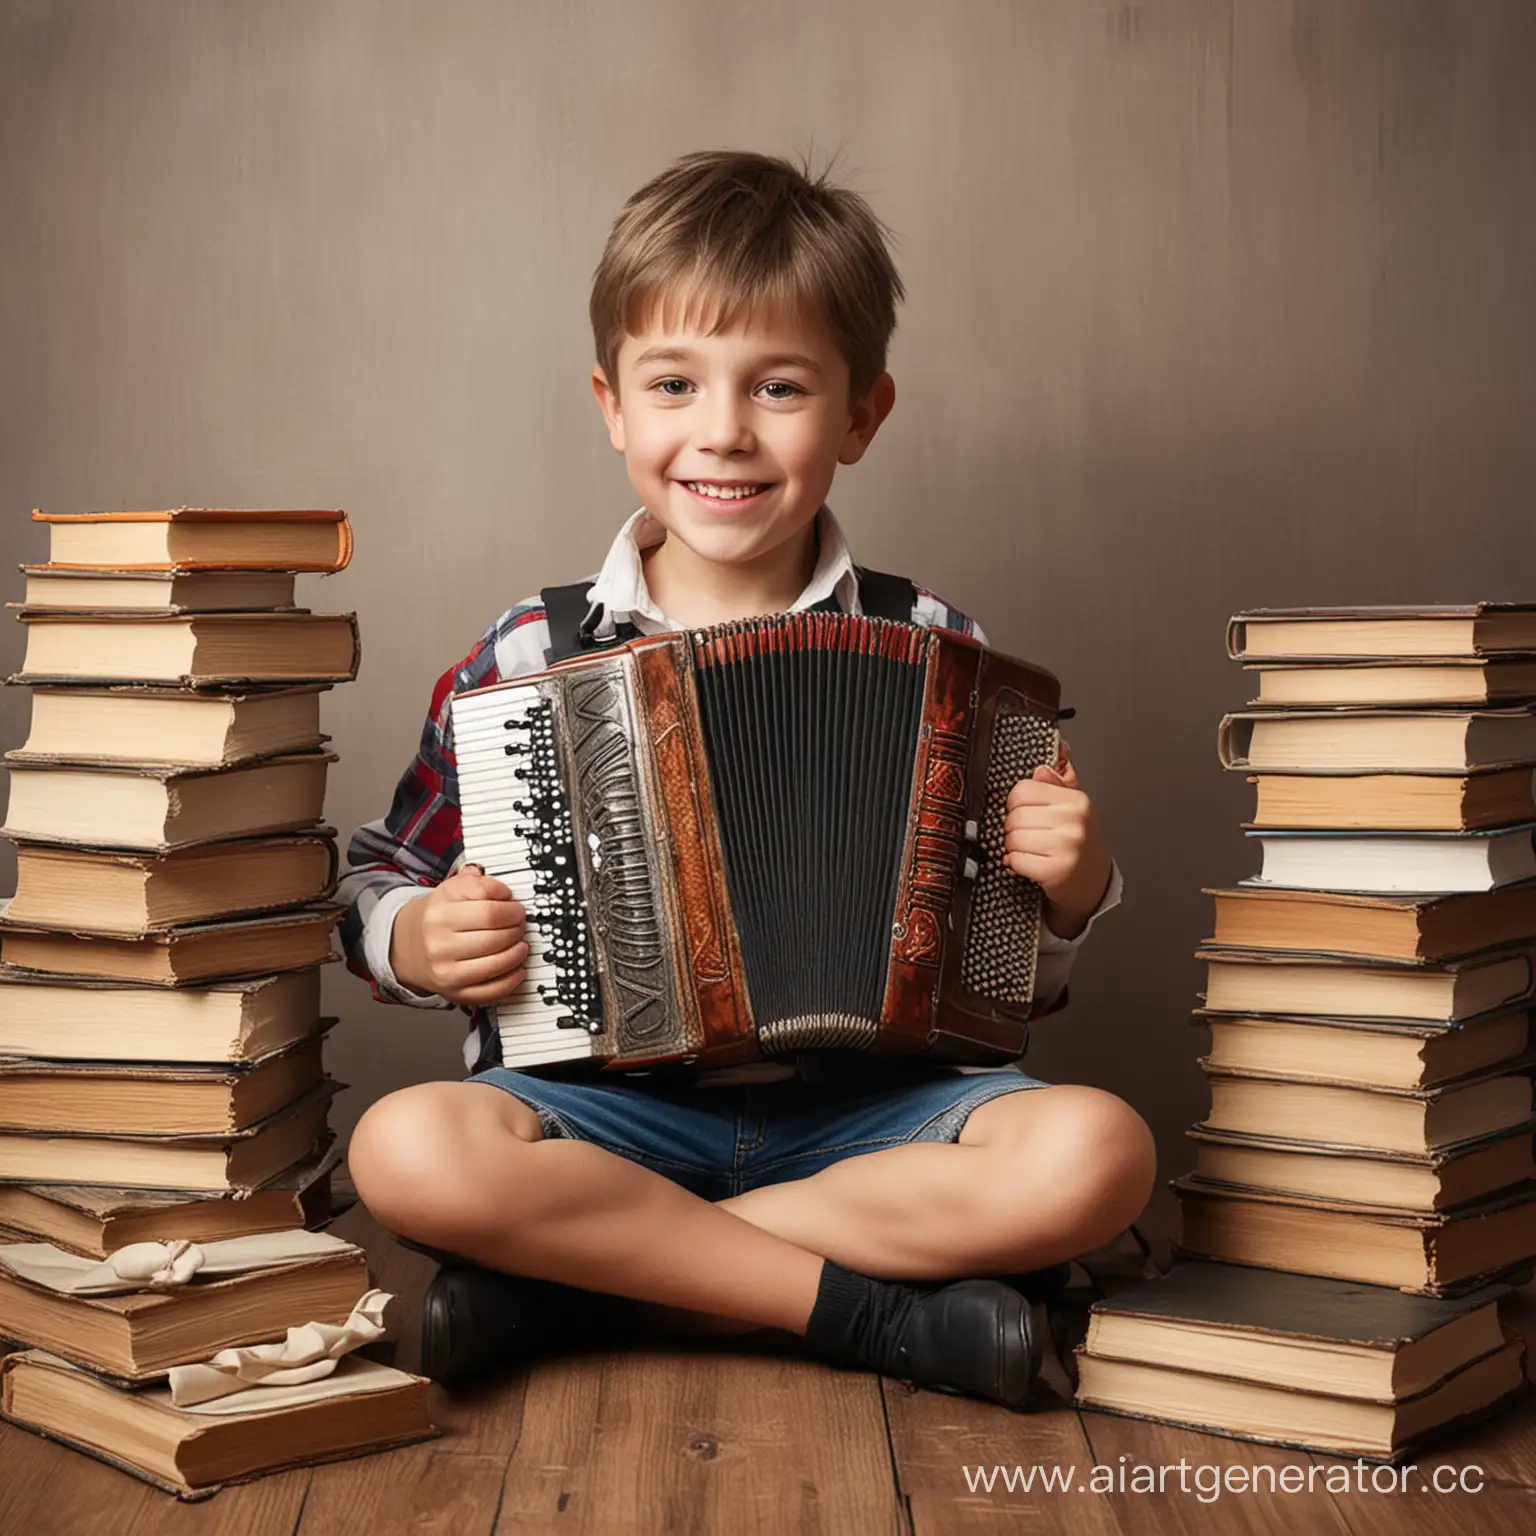 мальчик с аккордеоном и много книг вокруг